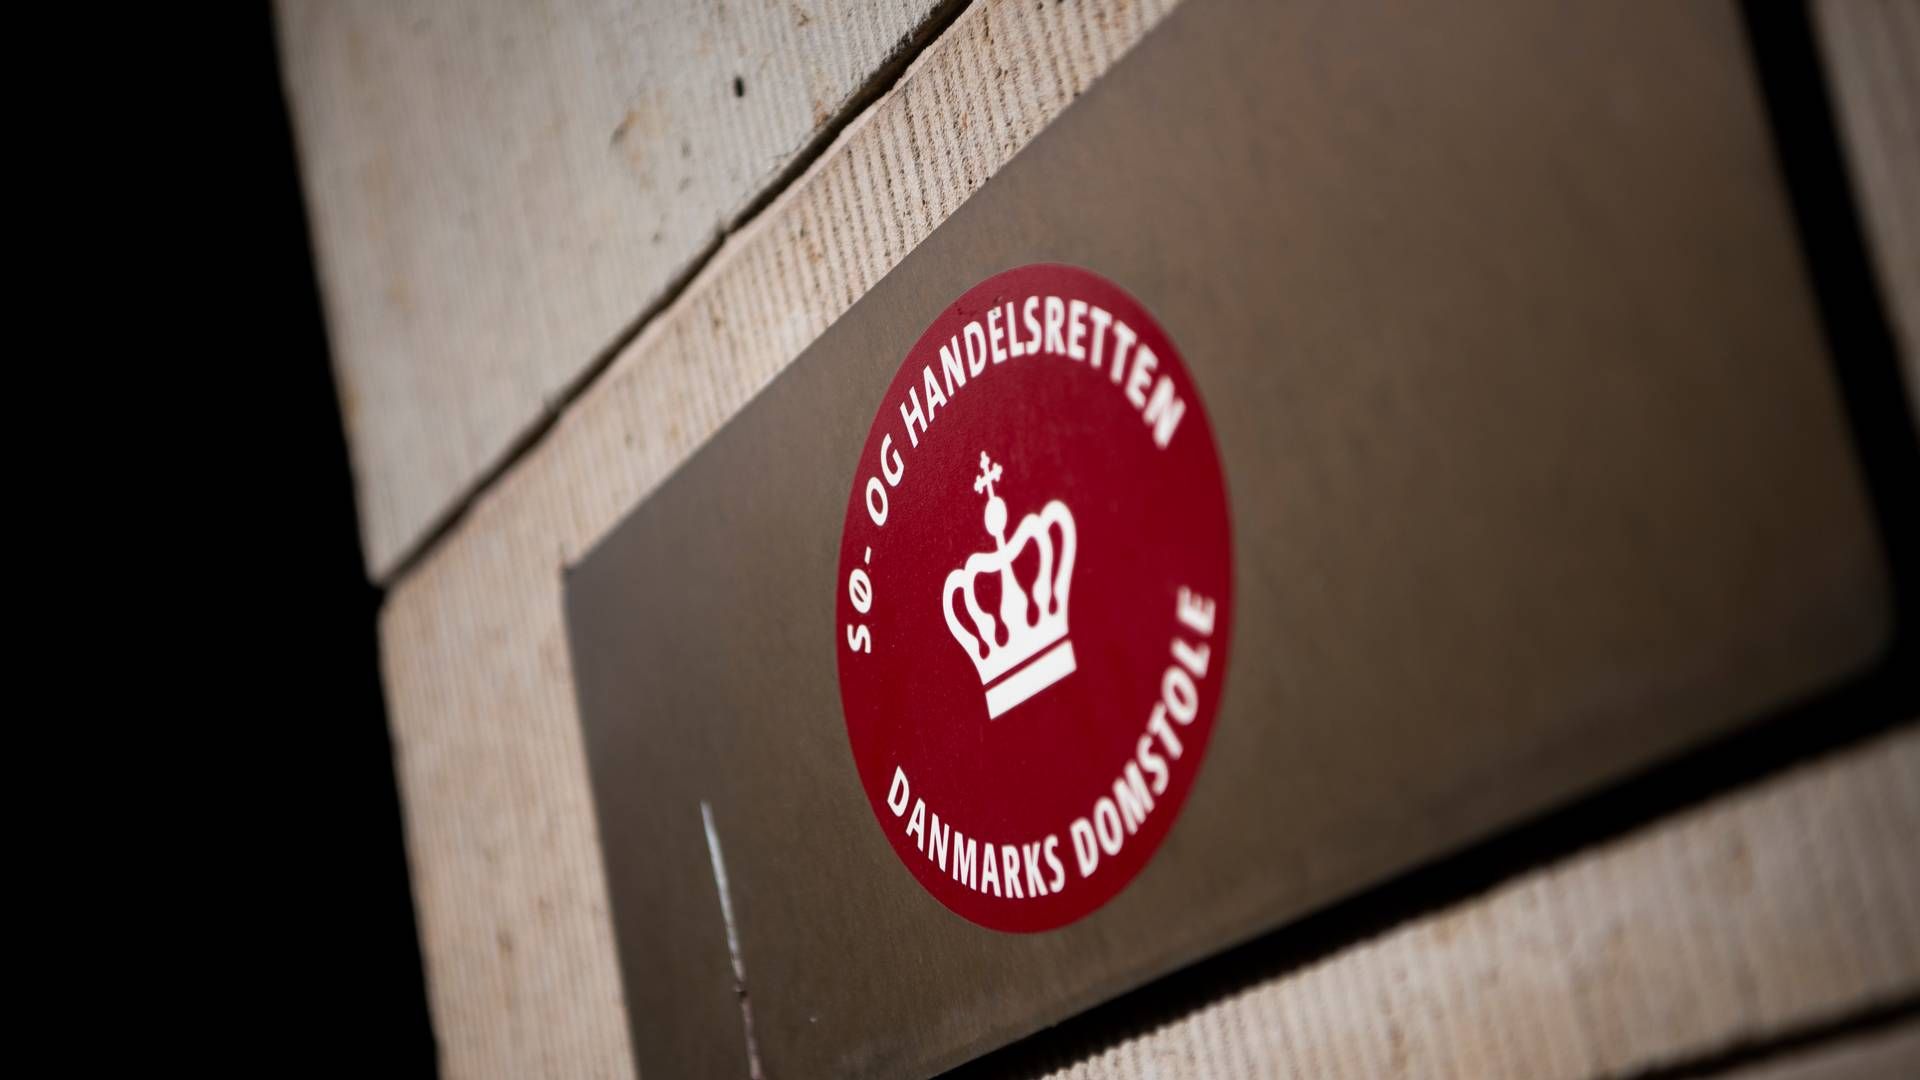 Sø- og Handelsretten er Danmarks største skifteret og behandler næsten halvdelen af alle konkursboer i landet. | Foto: Anthon Unger